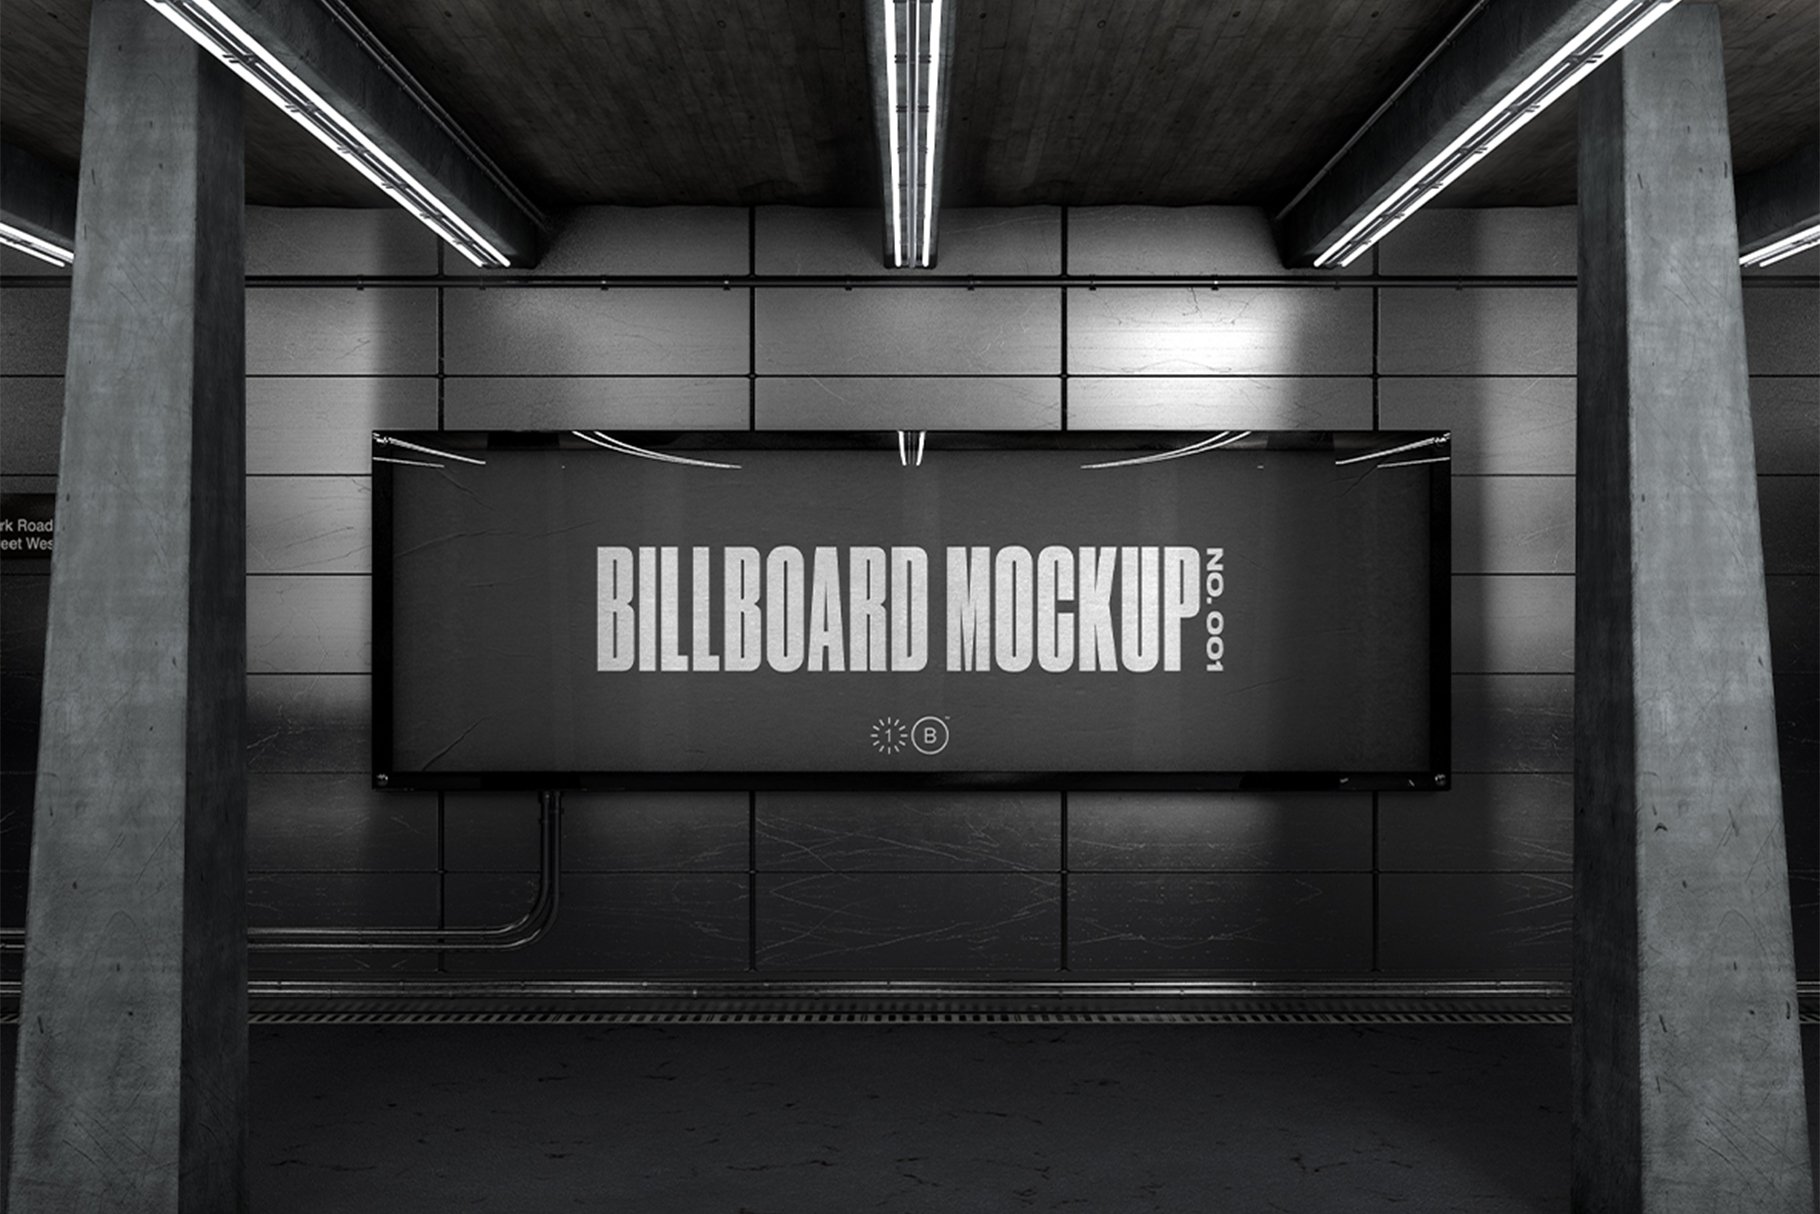 Subway Billboard Mockup - No. 001 cover image.